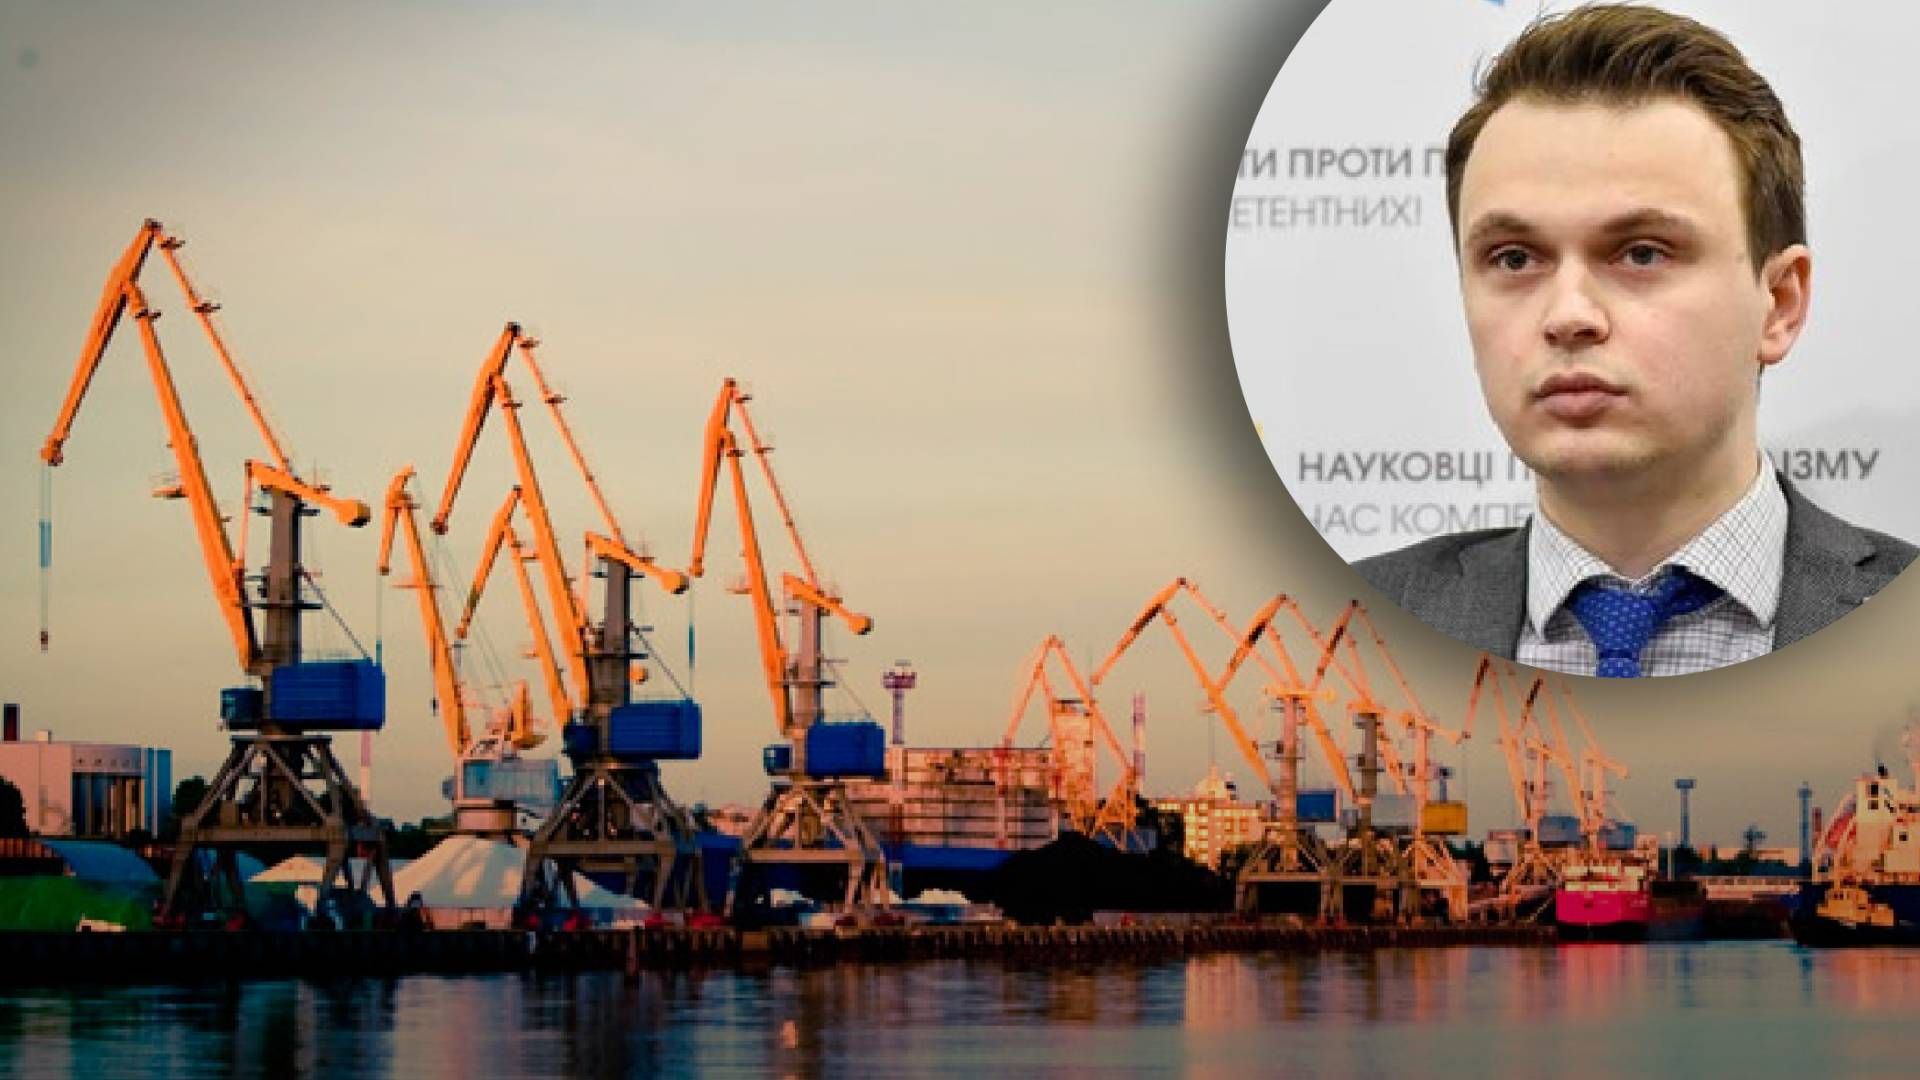 При каких условиях пути обещали разблокировать украинские порты - Давидюк